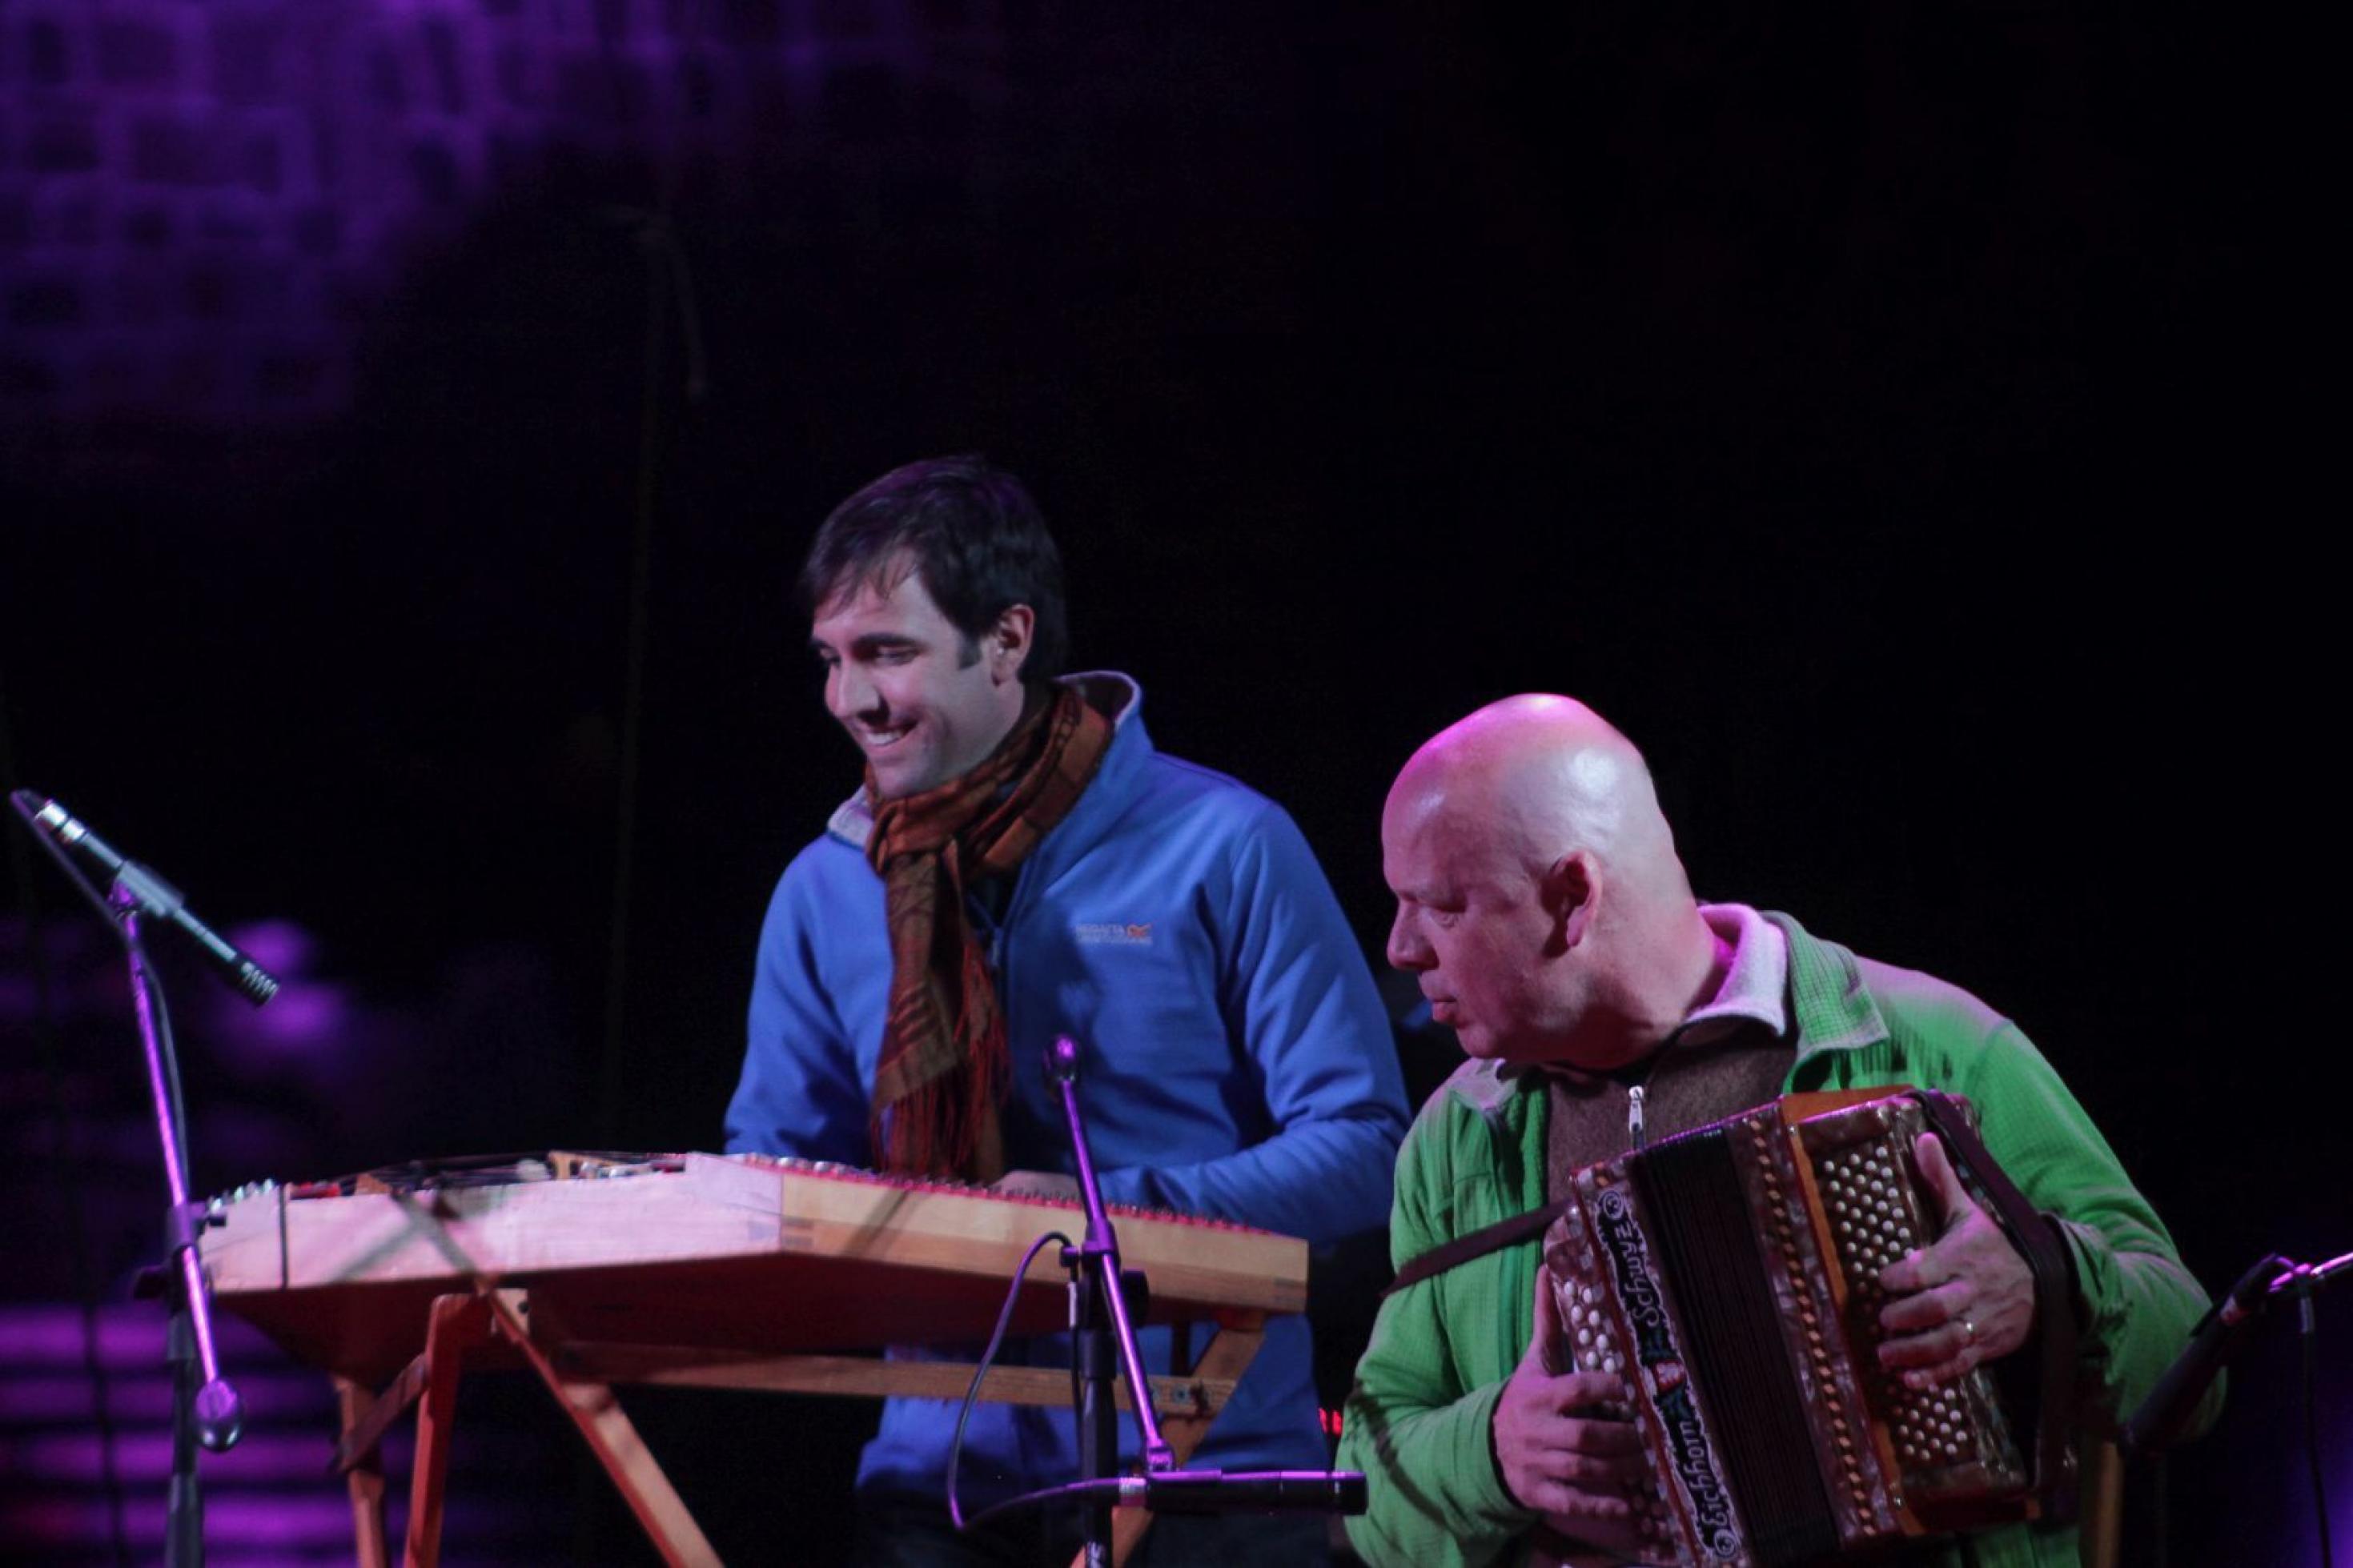 Zwei Männer musizieren auf einer Freilichtbühne, nachts. Links ein Hackbrettspieler, rechts im Vordergrund ein kahlköpfiger Mann mit einem Schweizer Handörgeli